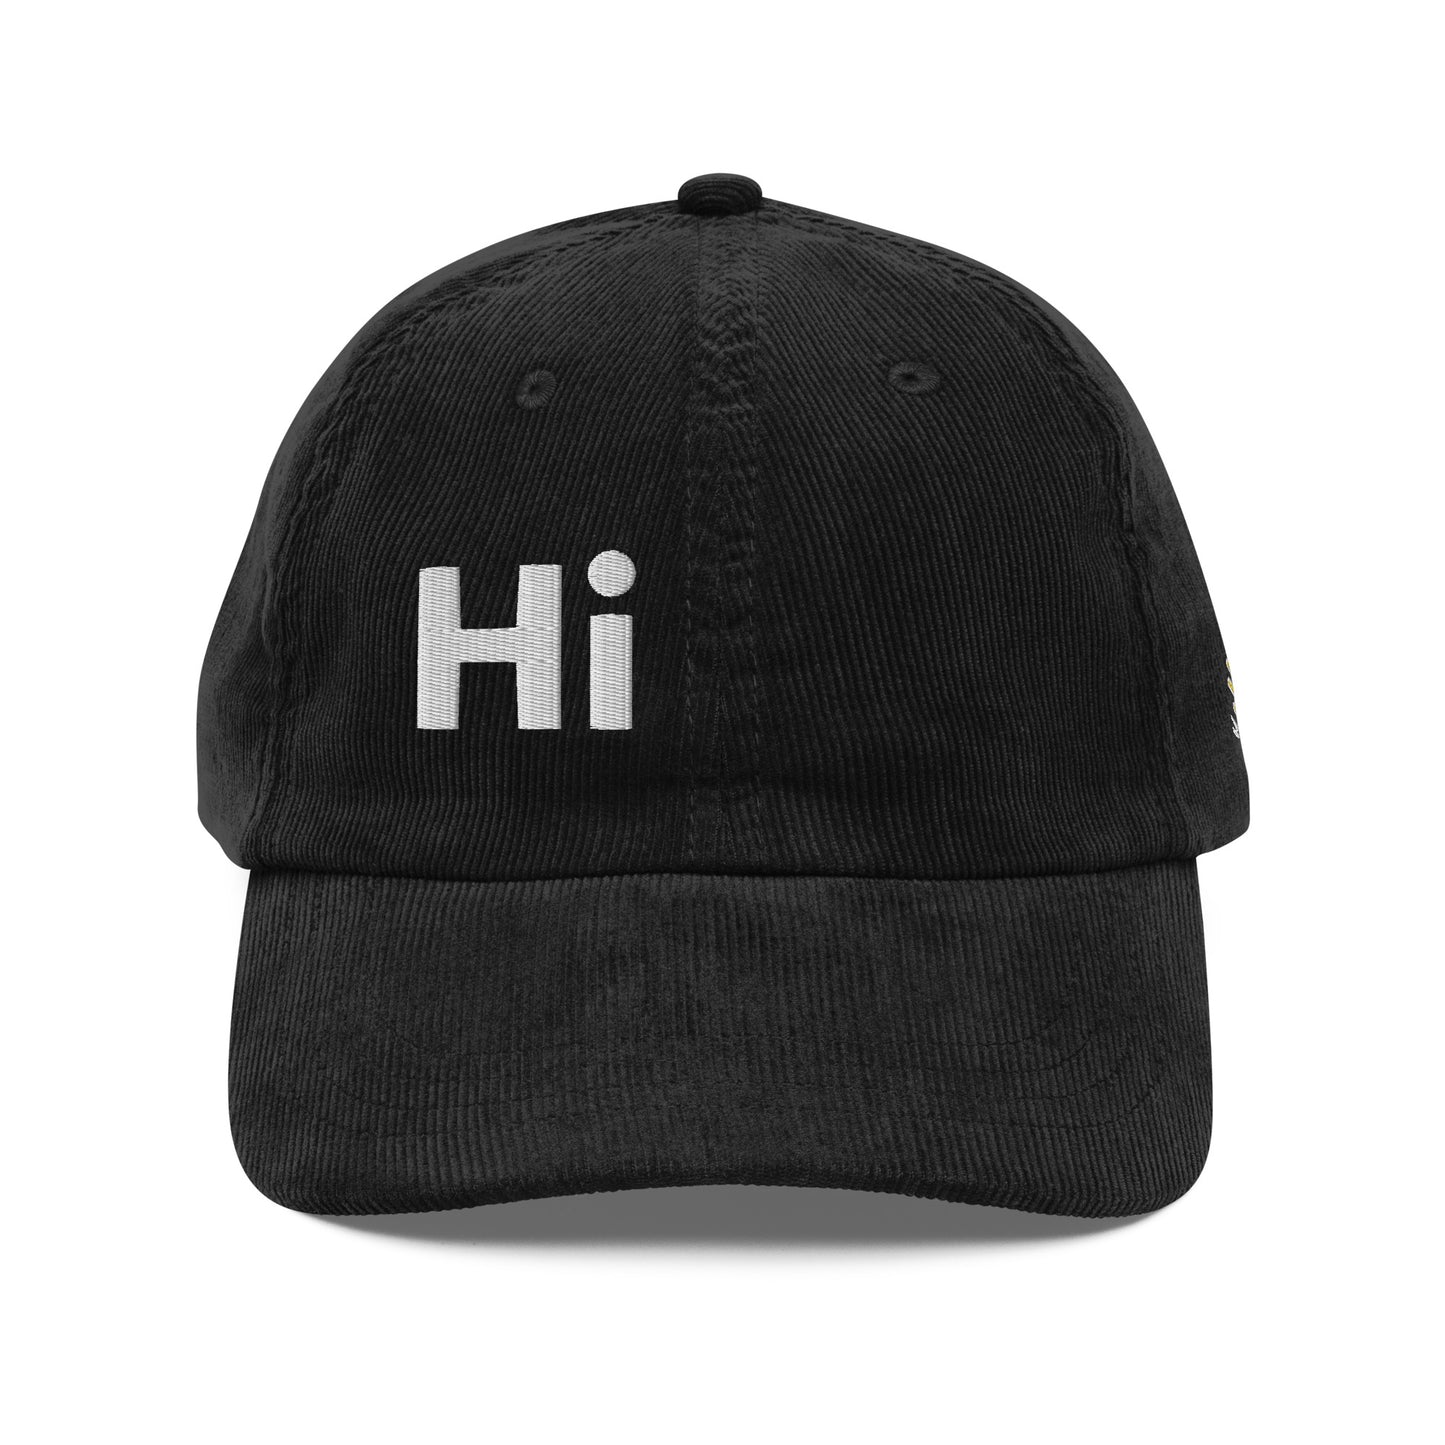 Hi Howzit Corduroy Hat